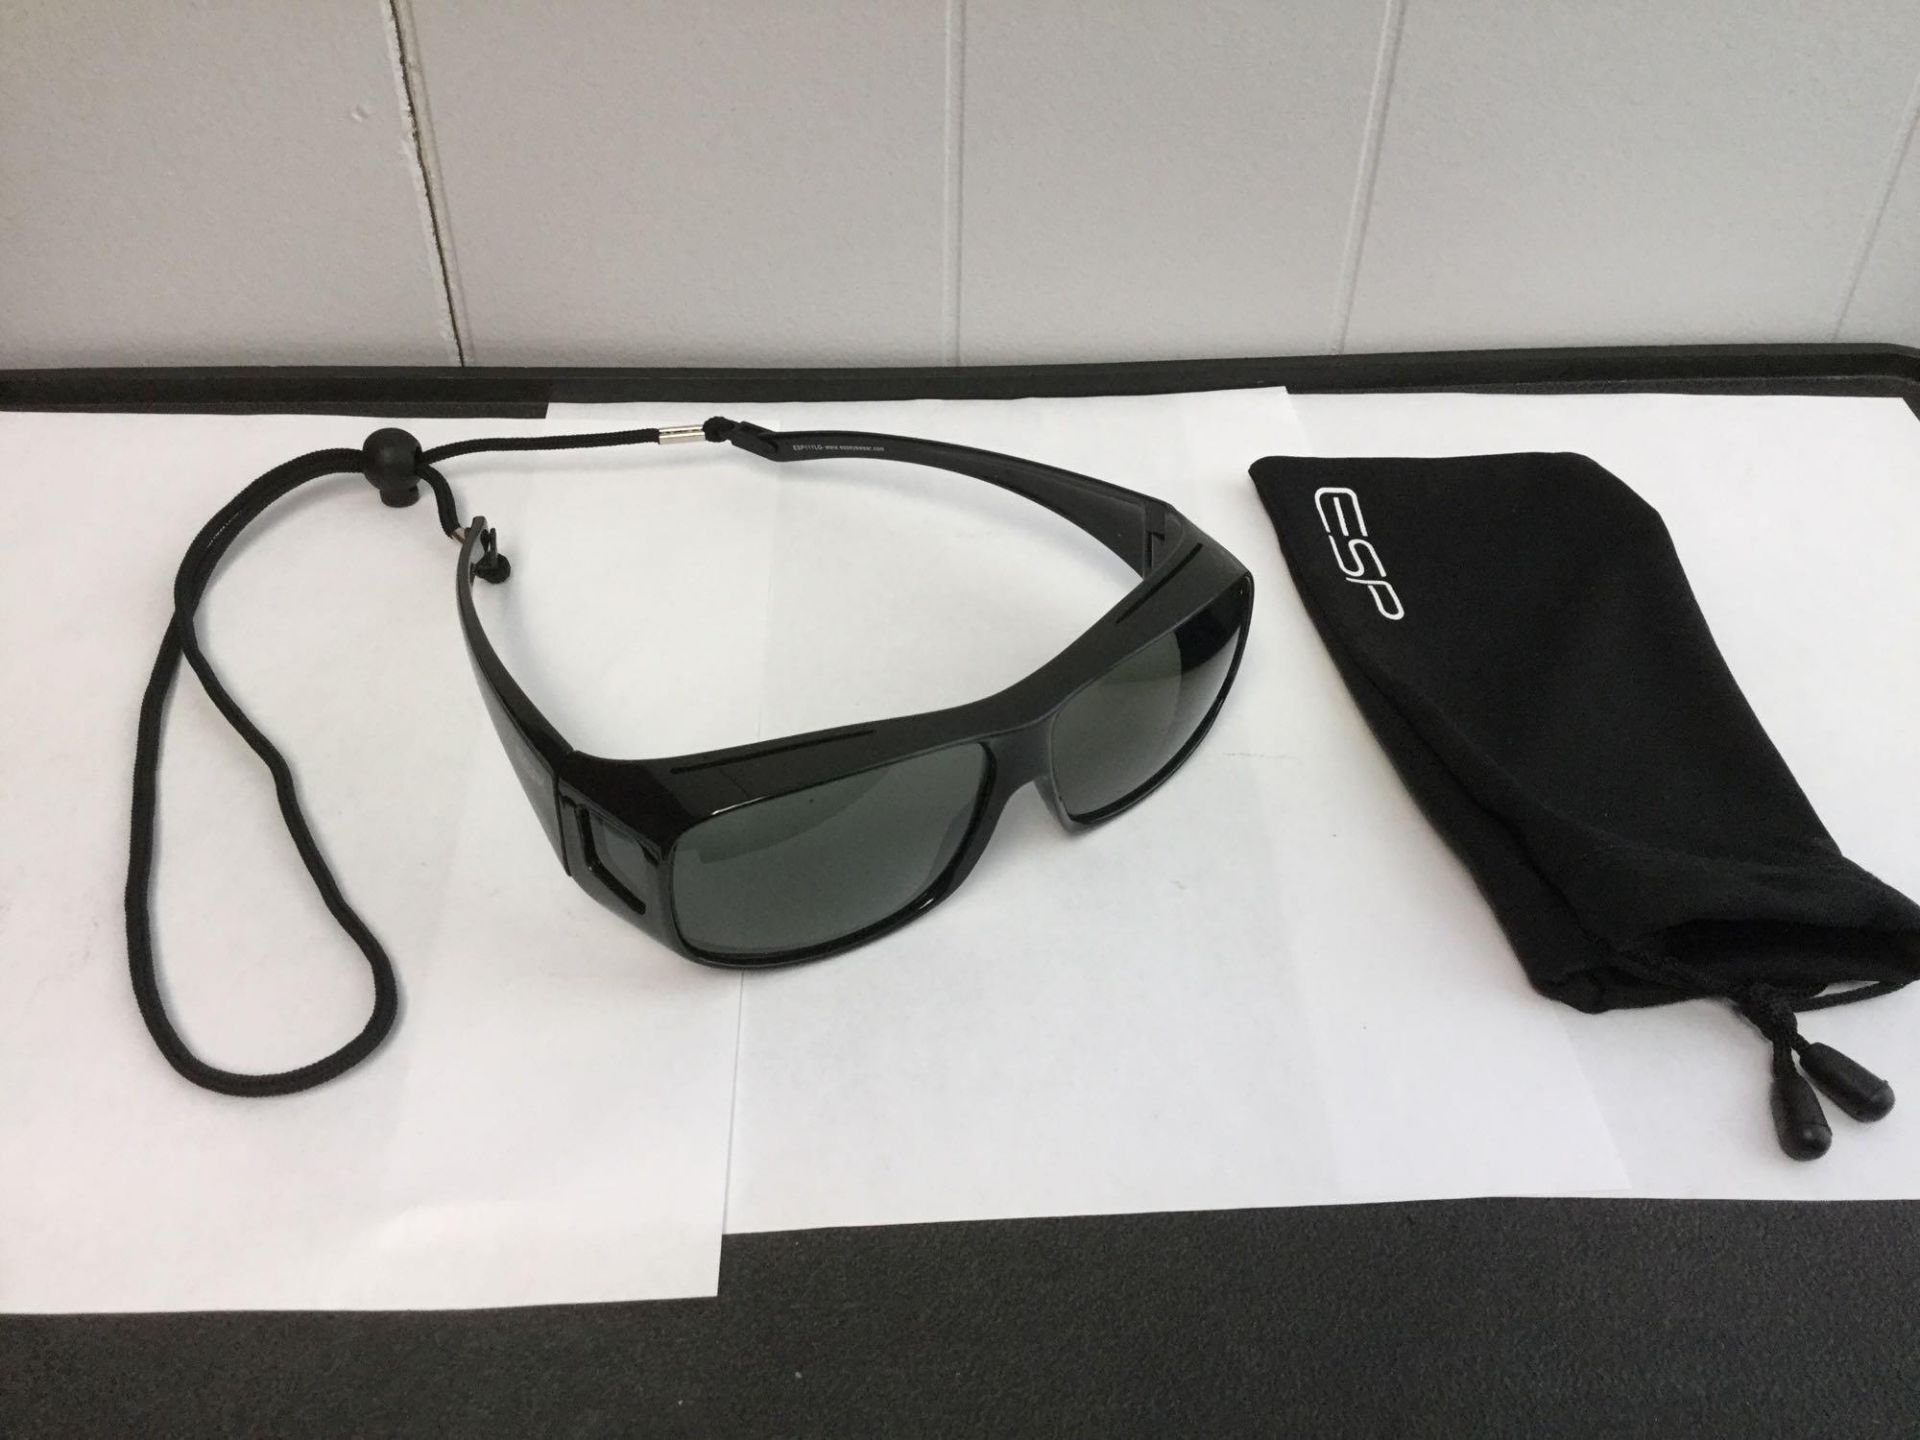 ESP Sunglasses with bag